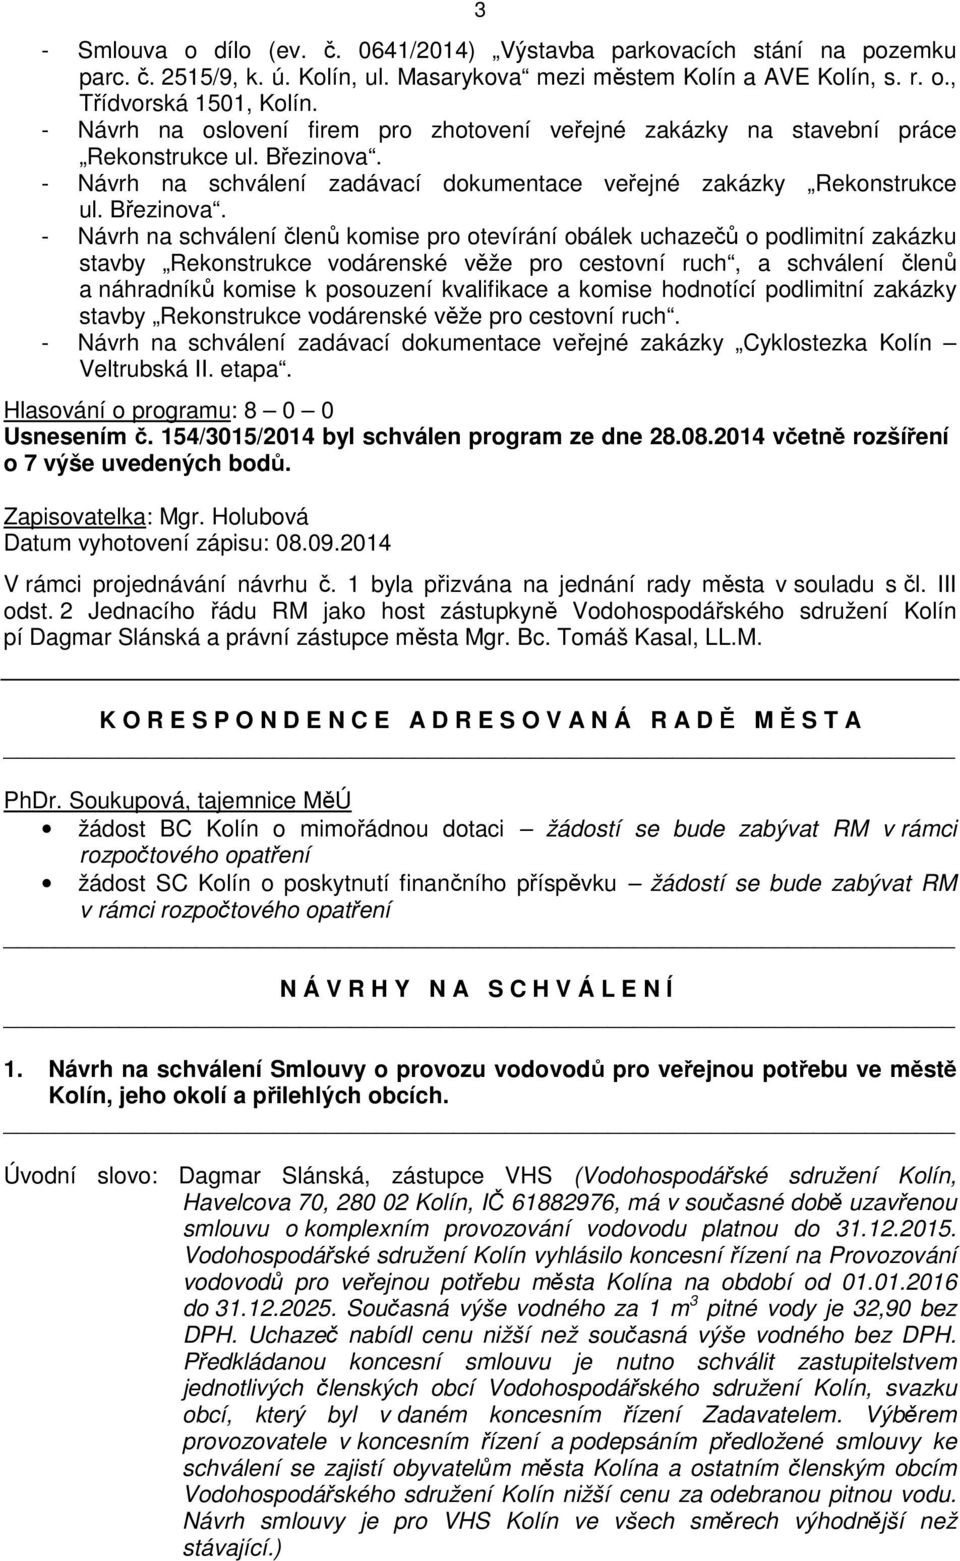 - Návrh na schválení zadávací dokumentace veřejné zakázky Rekonstrukce ul. Březinova.